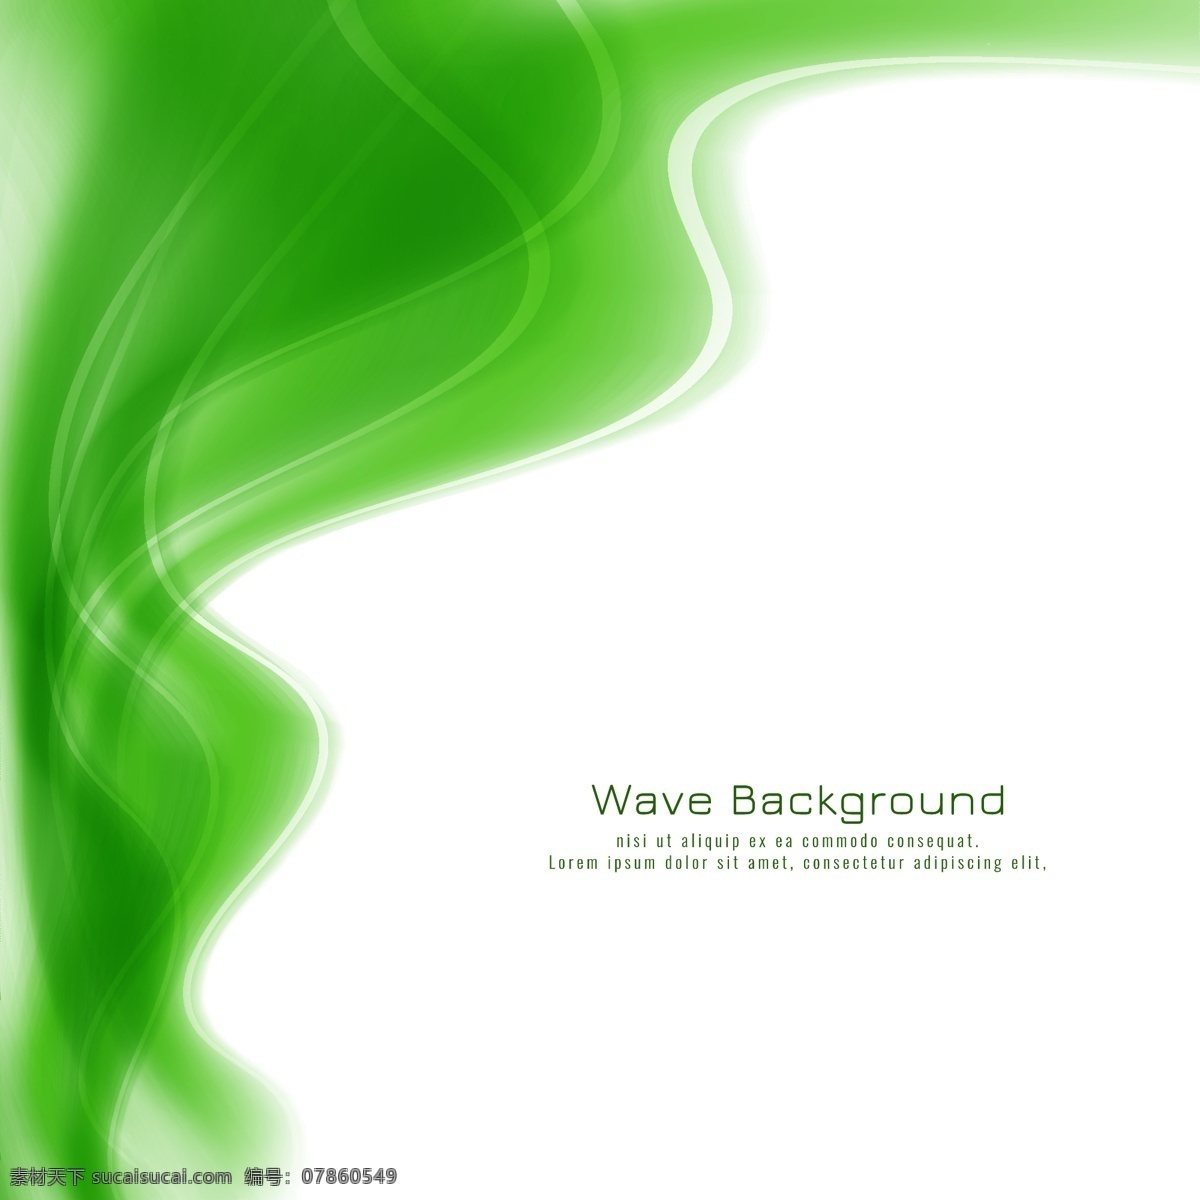 封面 海报 绿色烟雾 绿色波纹 绿色封面设计 绿色 曲线 波纹 抽象背景 春天 几何图形 绿色曲线 绿色波浪 波浪 线条 设计素材 底纹边框 抽象底纹